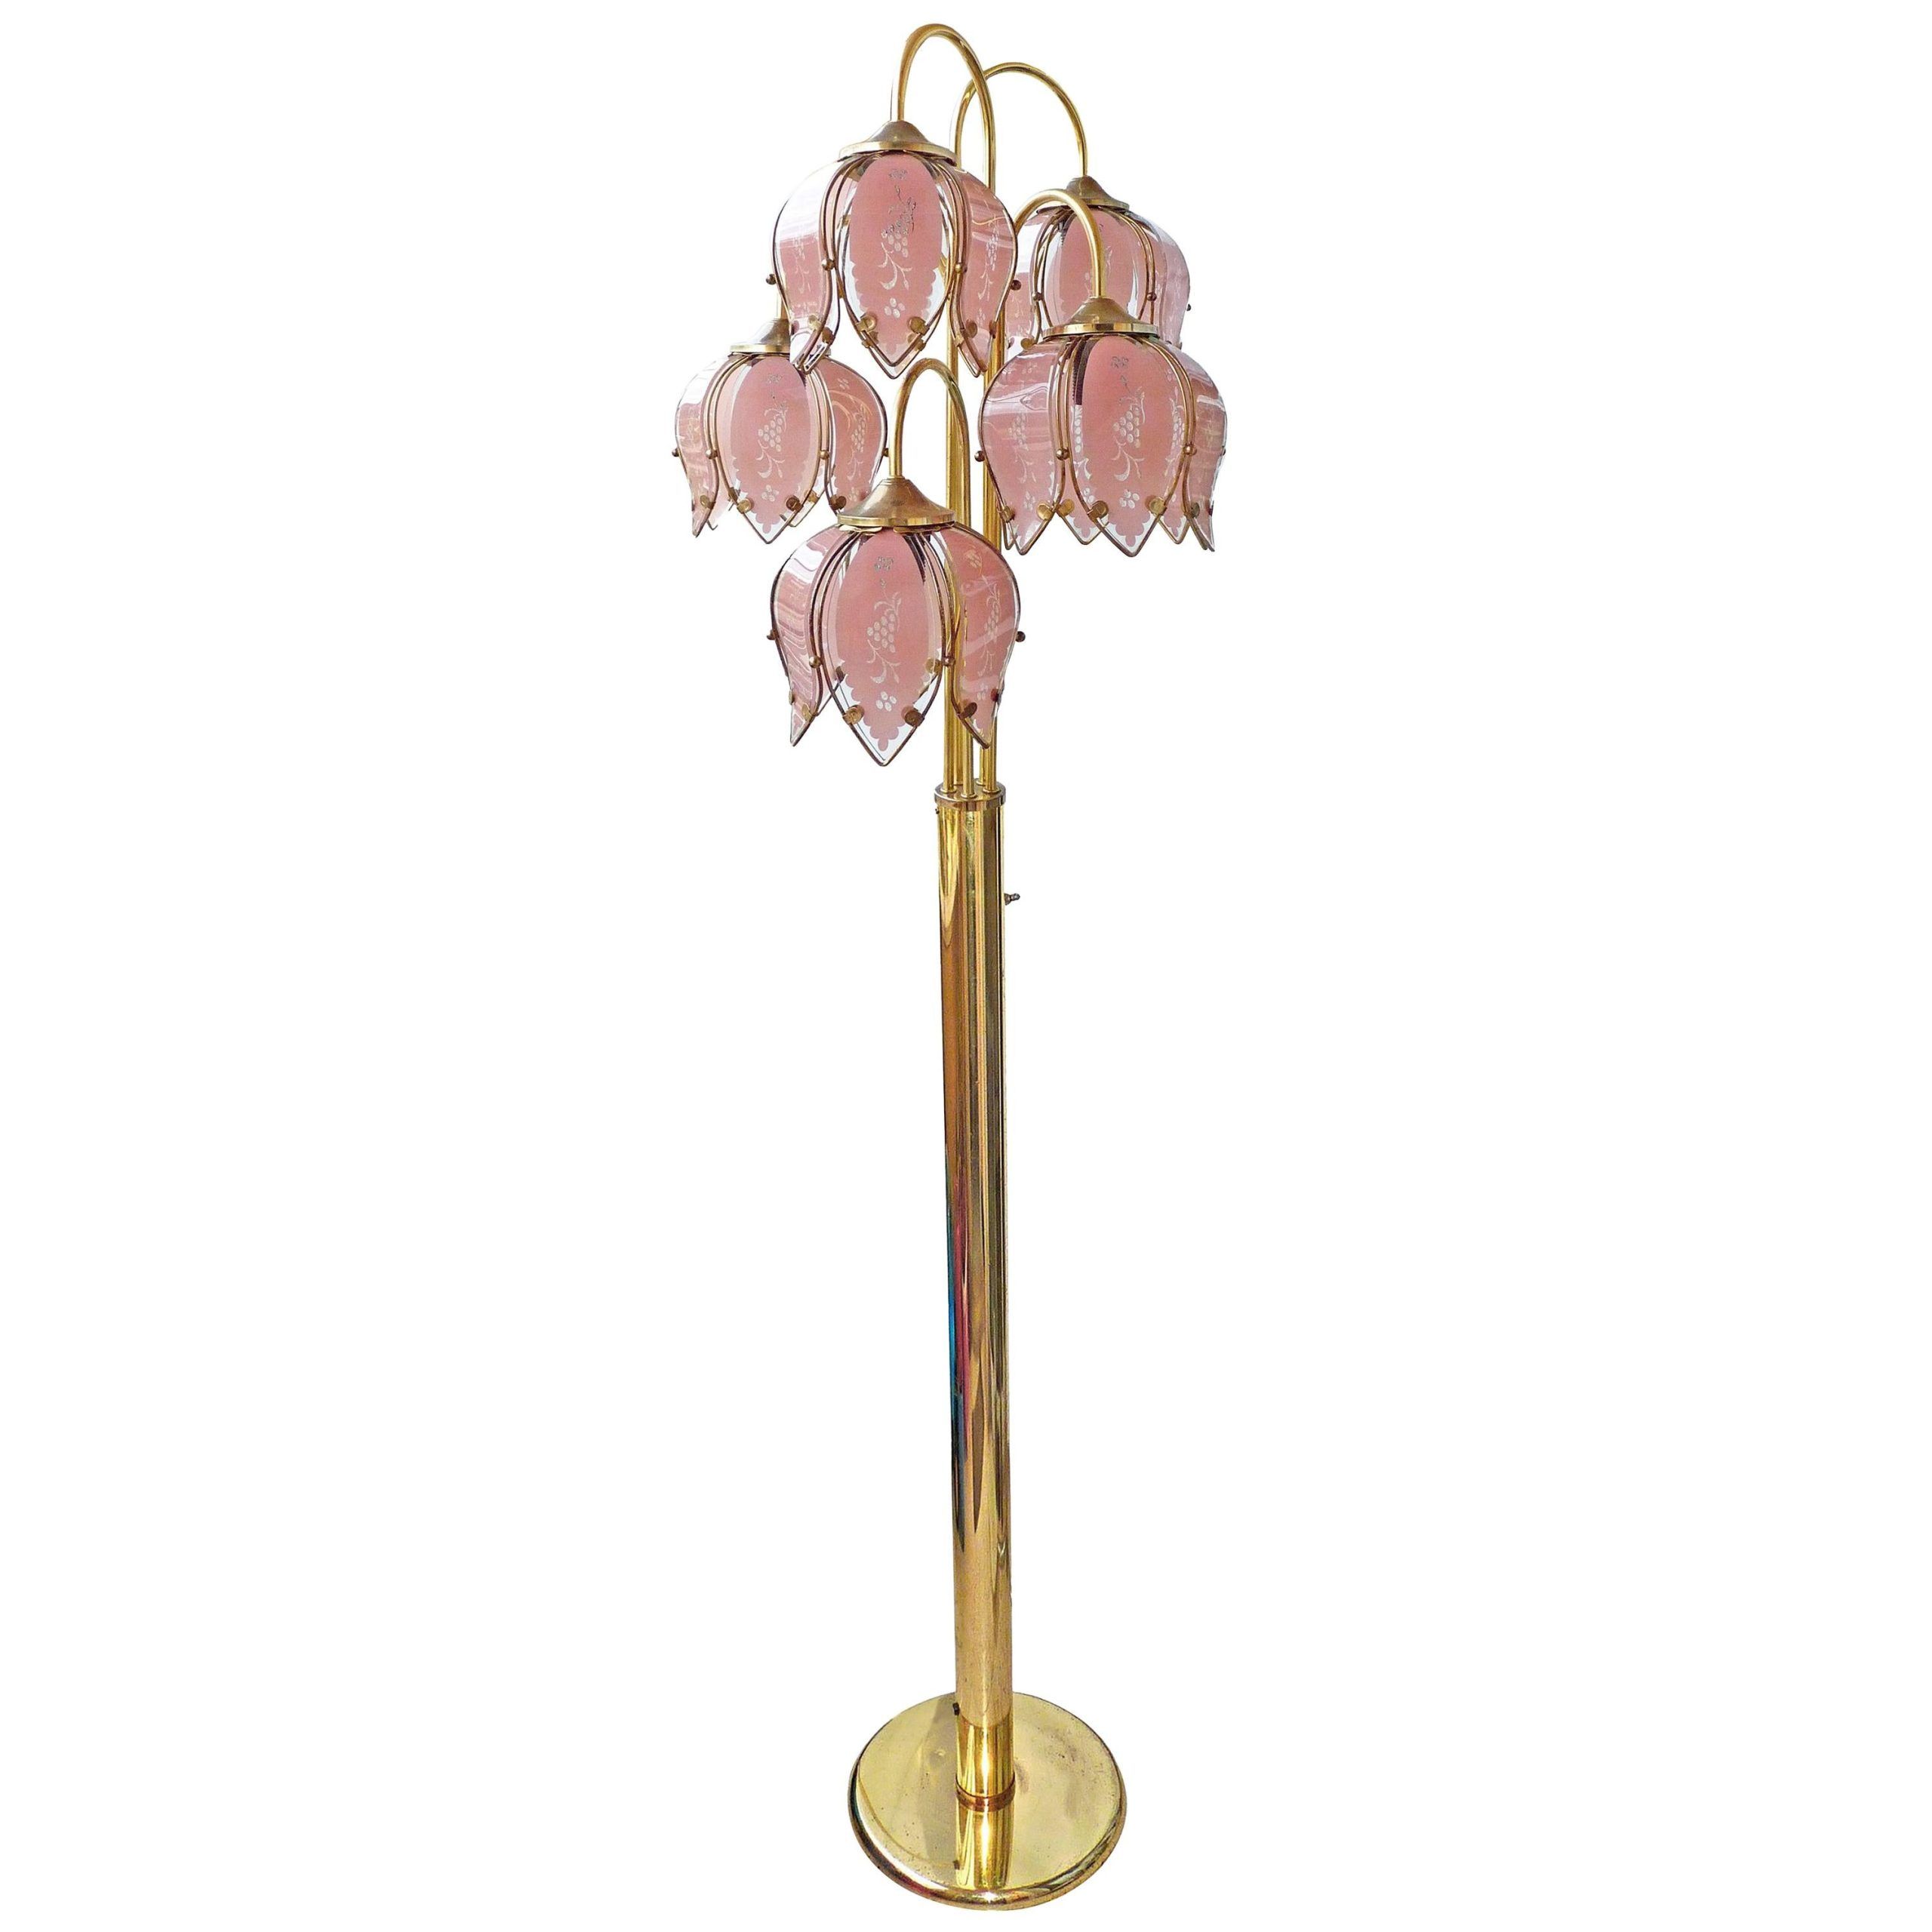 Flower Floor Lamp, Vintage Flower Lamp,  Hollywood Regency Art Deco Tulip Lamp With Most Popular Flower Floor Lamps (View 4 of 15)